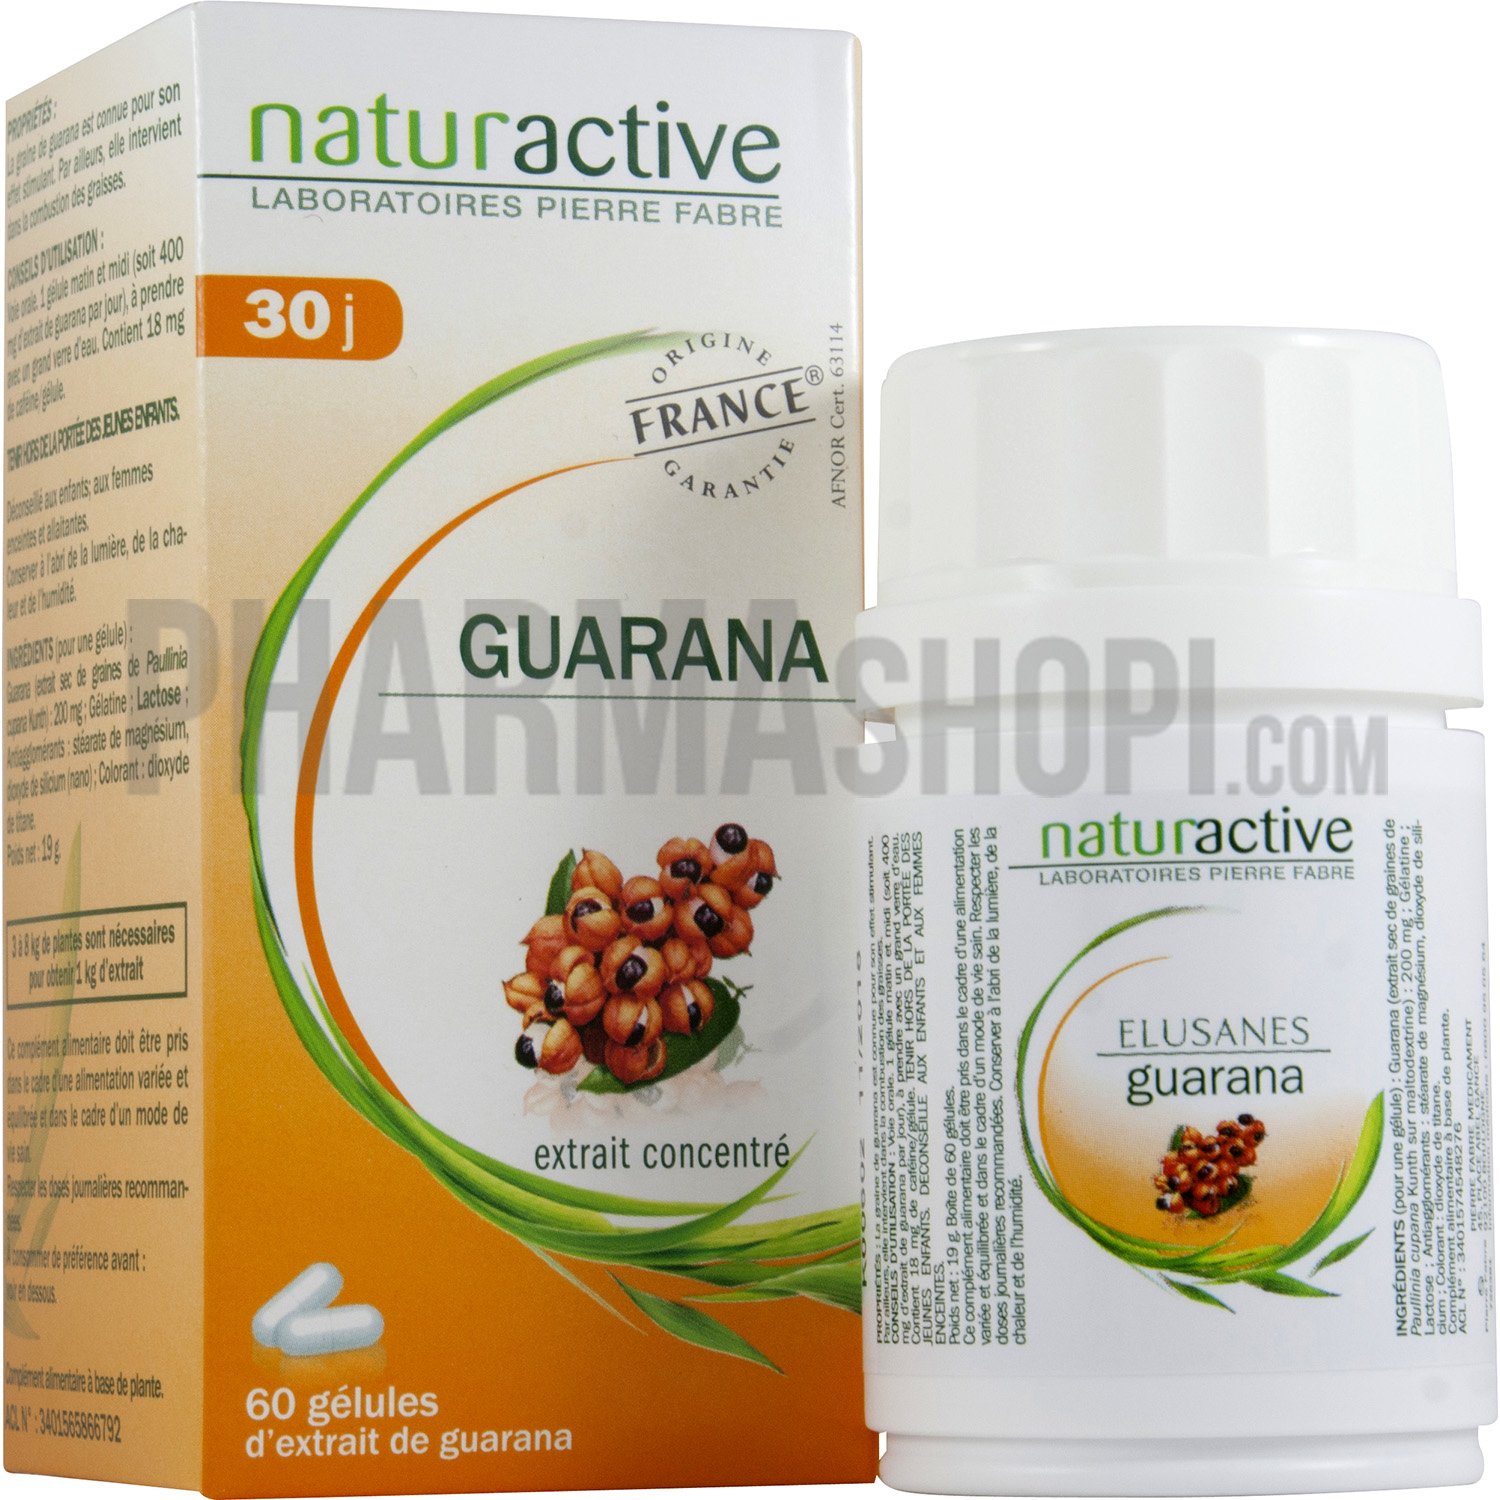 Elusanes Guarana Naturactive - boite de 60 gélules